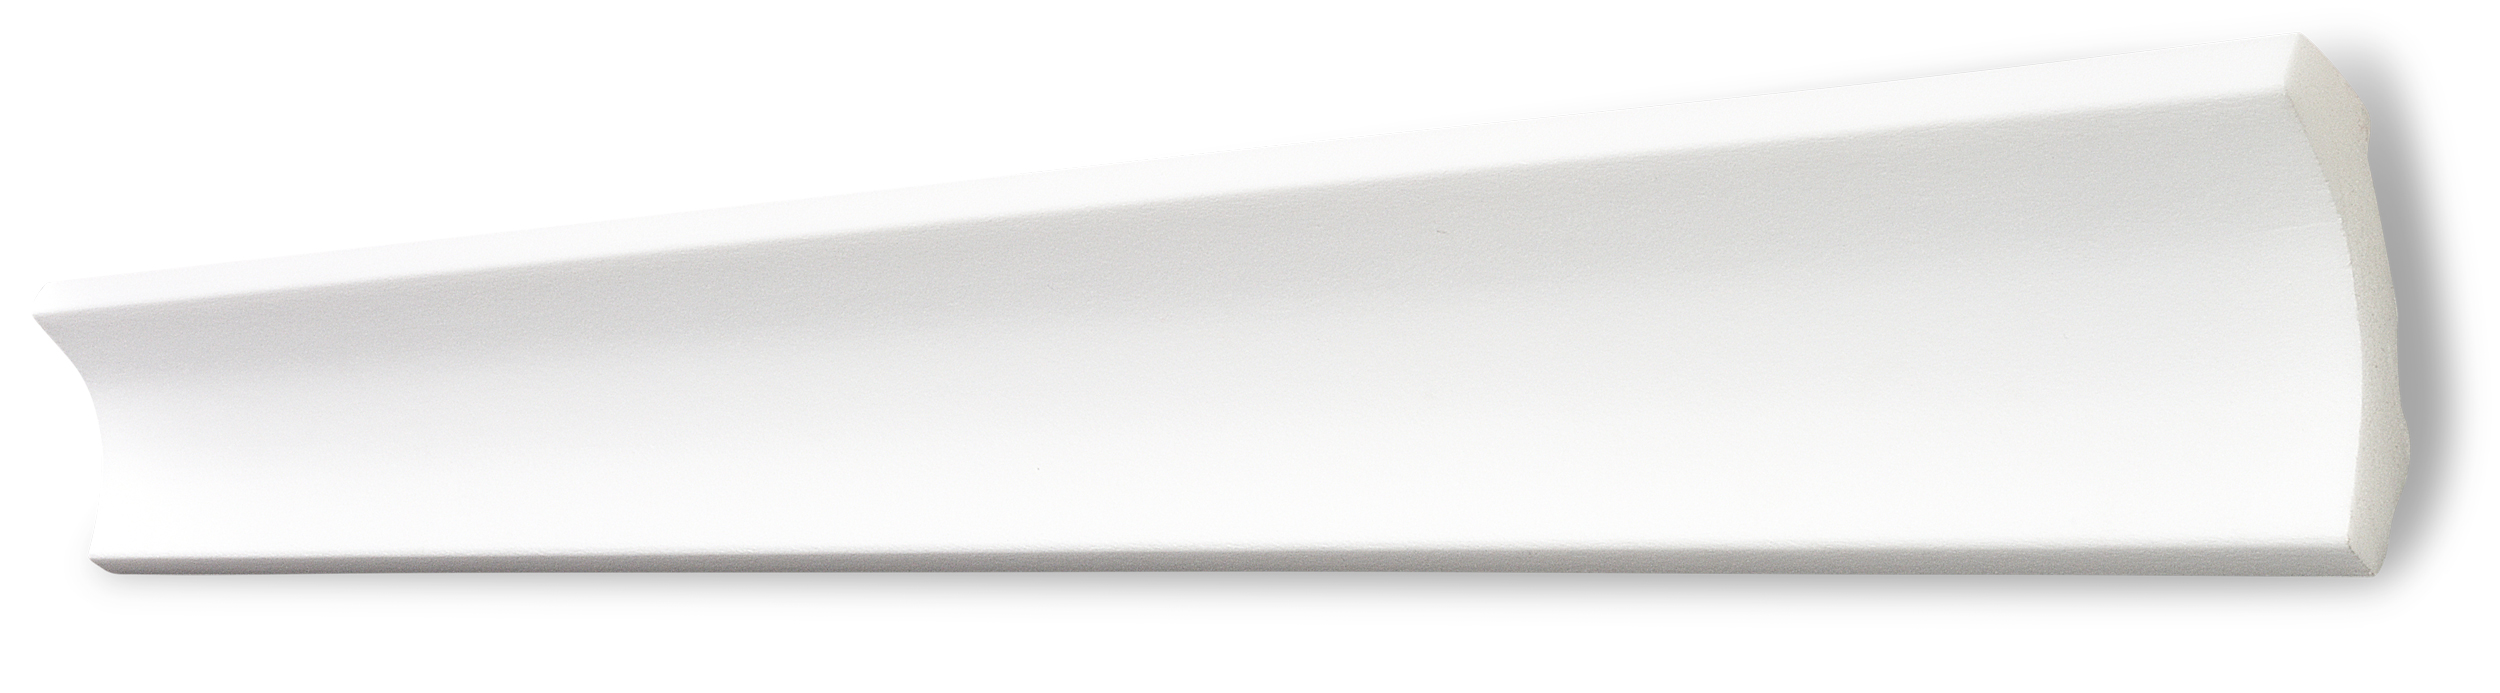 Decosa Zierprofil B7, weiß, 50 x 50 mm, Länge: 2 m